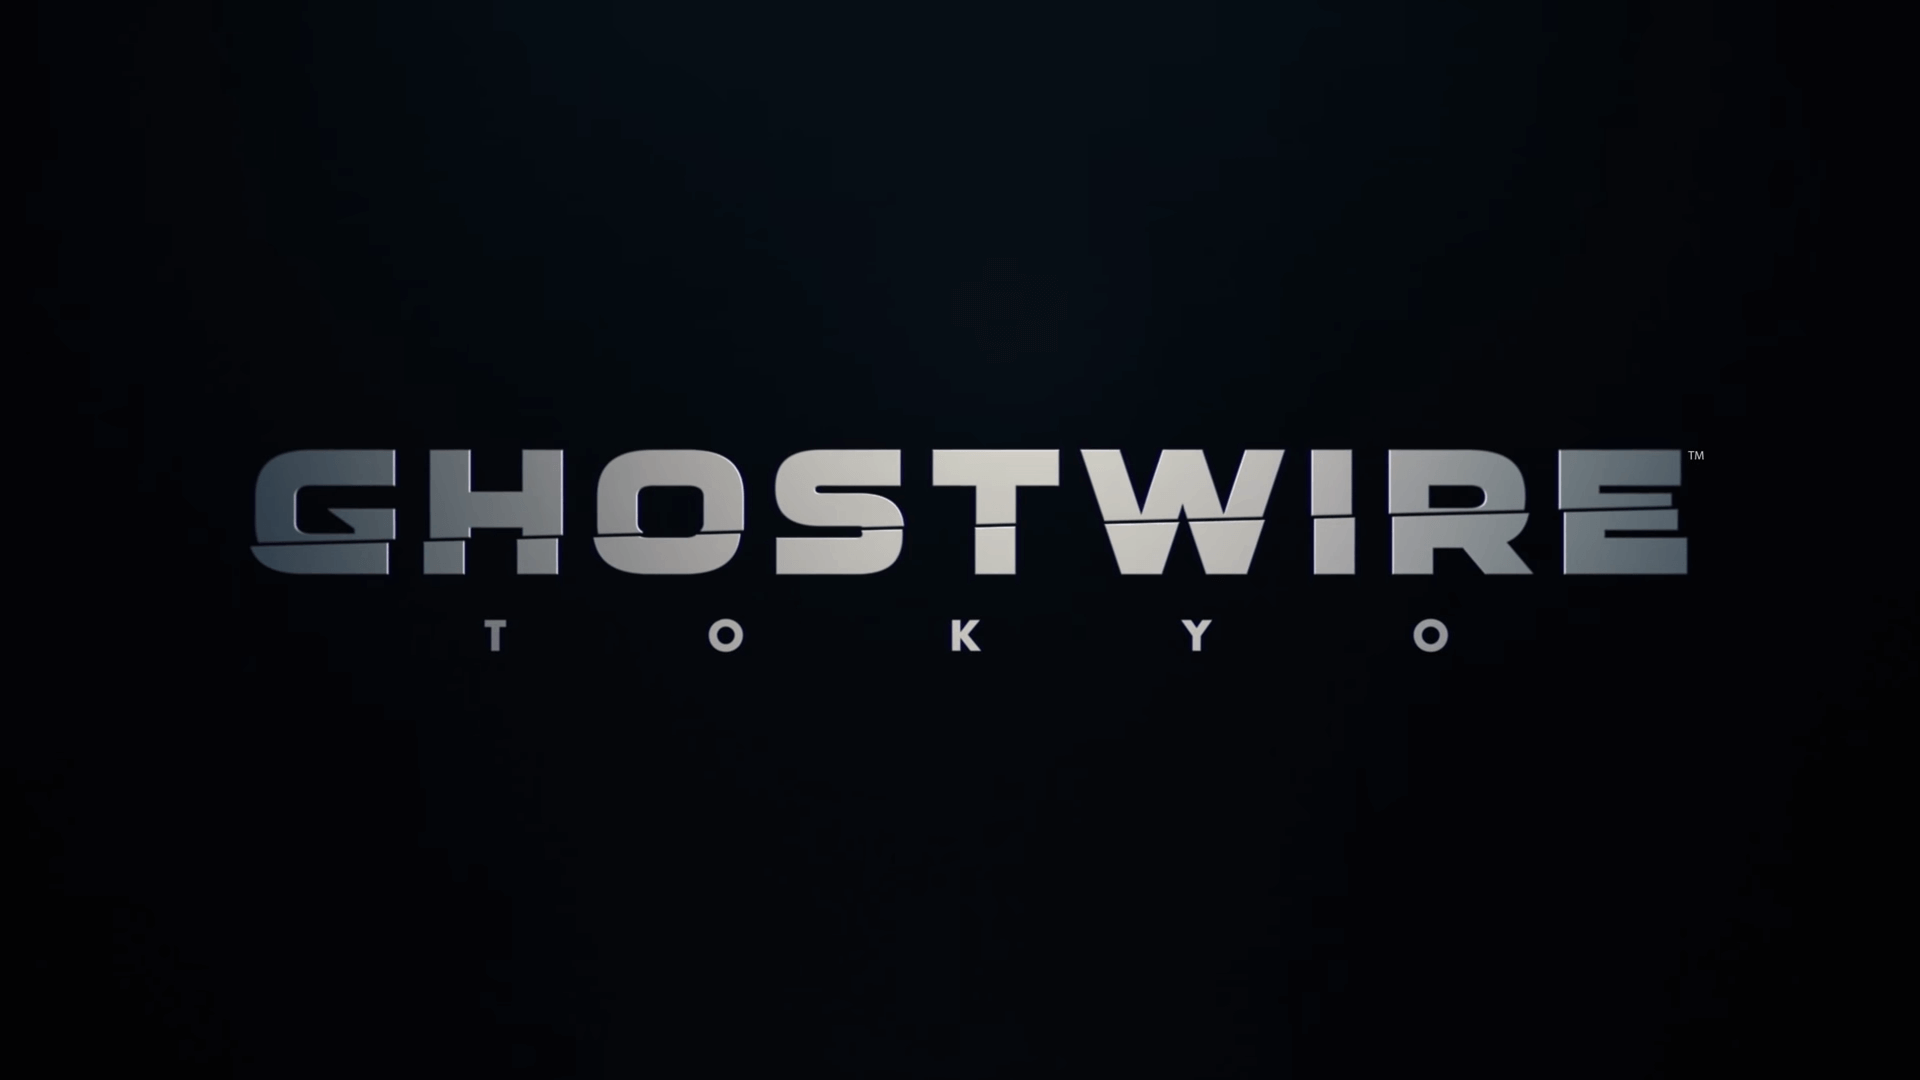 Ghostwire: Tokyo Launch Trailer veröffentlicht Titel